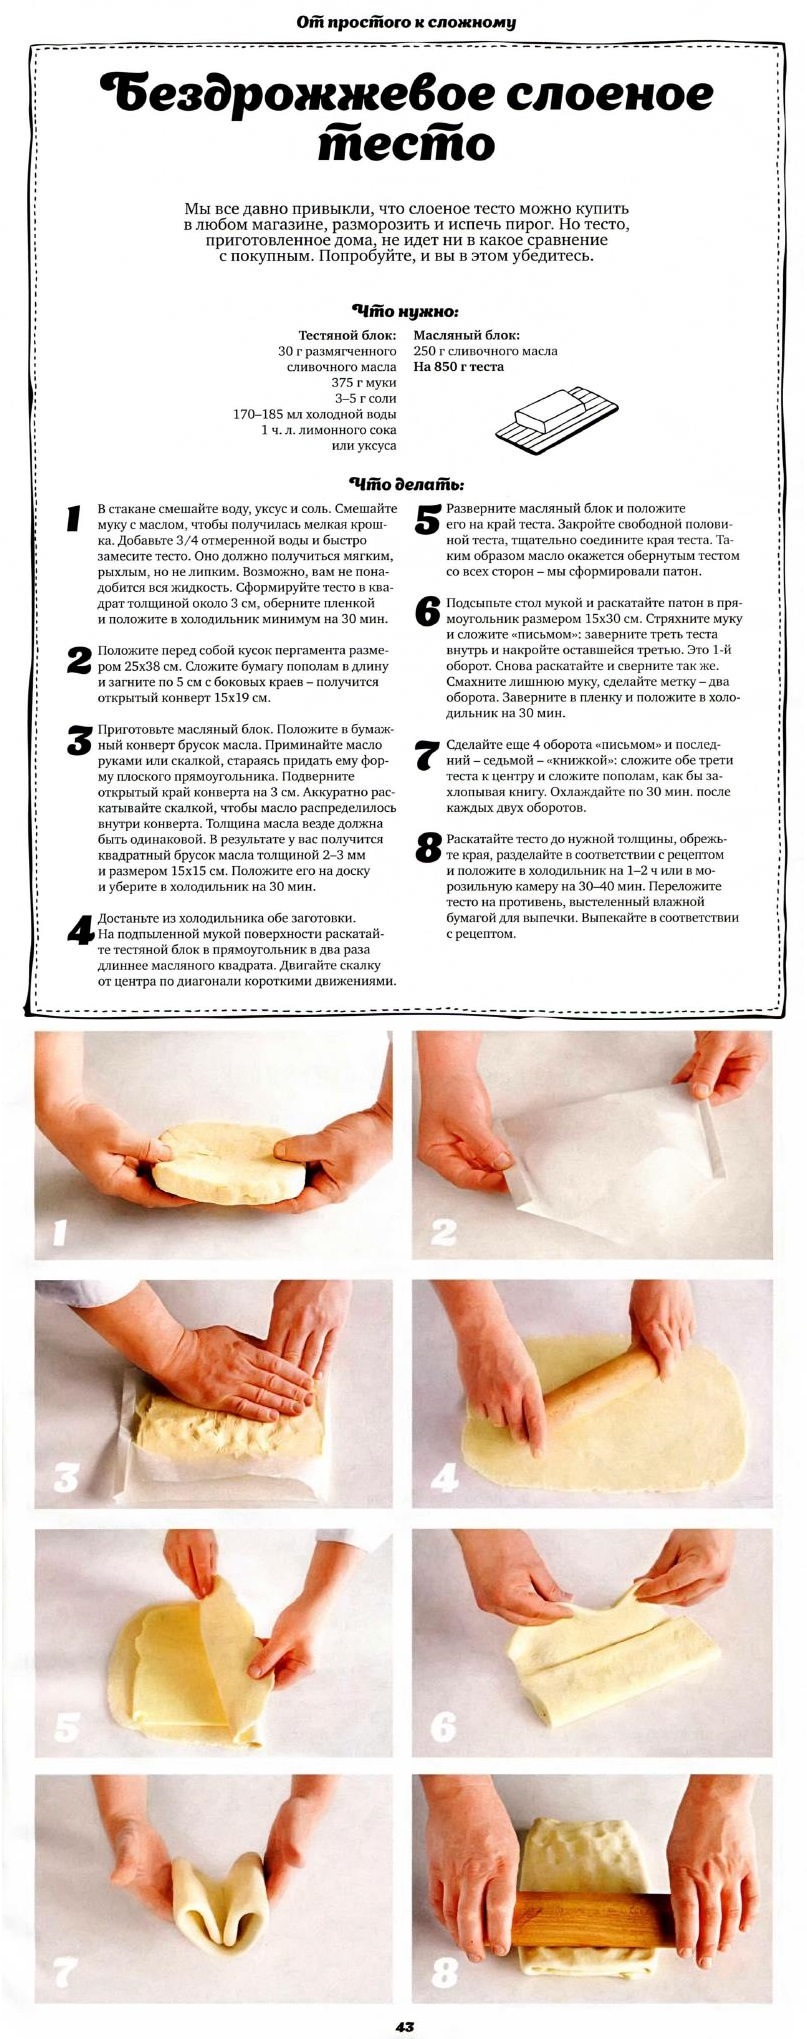 Тесто дрожжевое покупное рецепт в духовке. Как сделать слоёное тесто бездрожжевое. Приготовление слоеного теста пошагово. Приготовление дрожжевого слоеного теста. Рецептура слоеного теста.